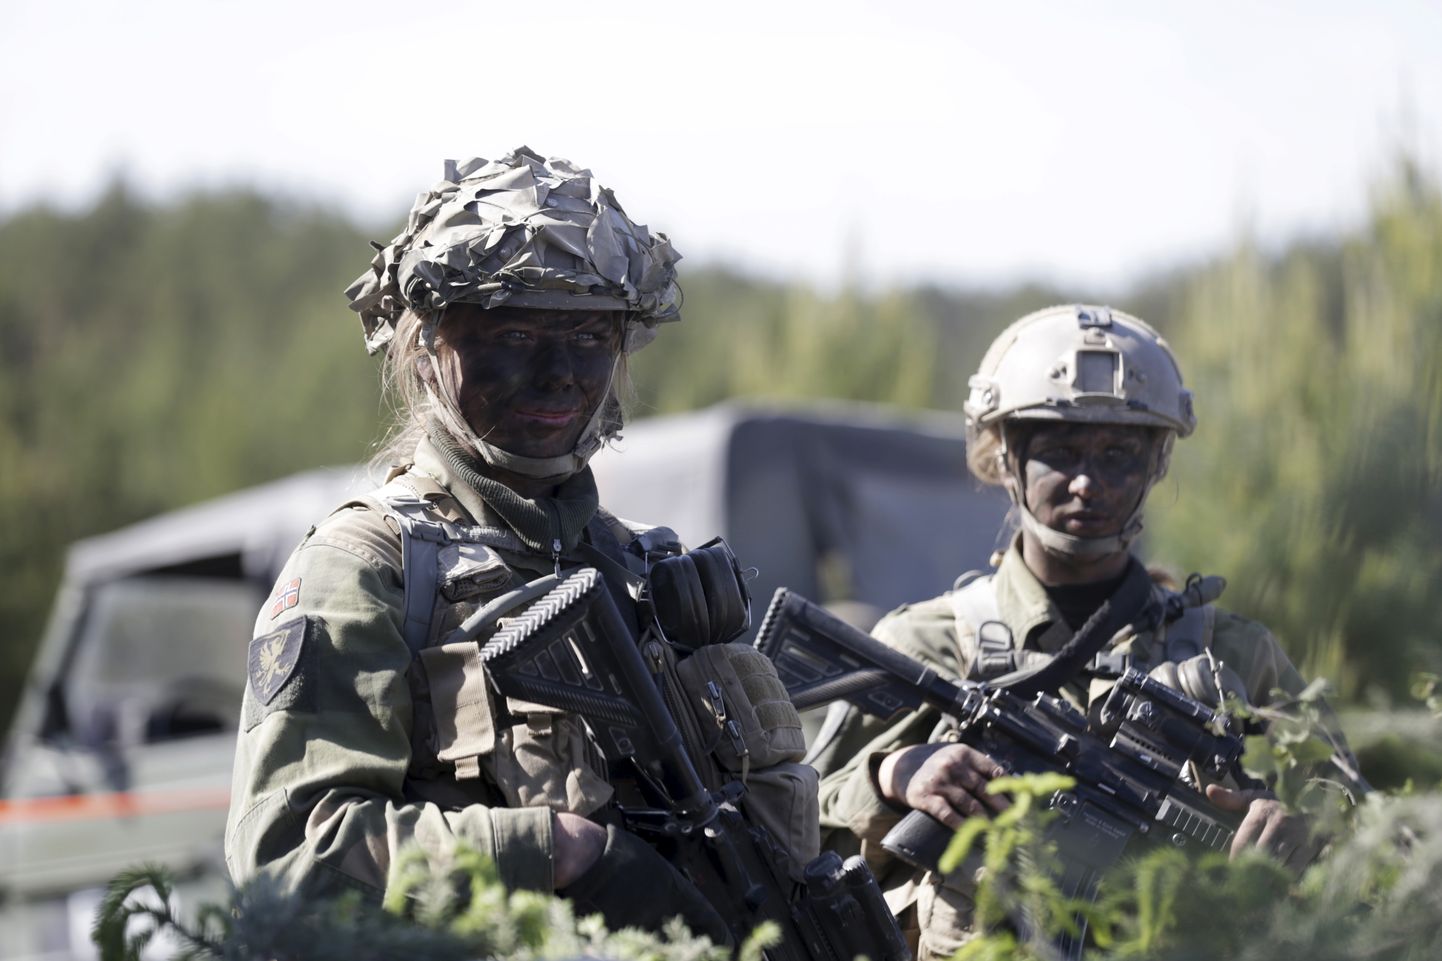 Norra sõdurid õppusel.